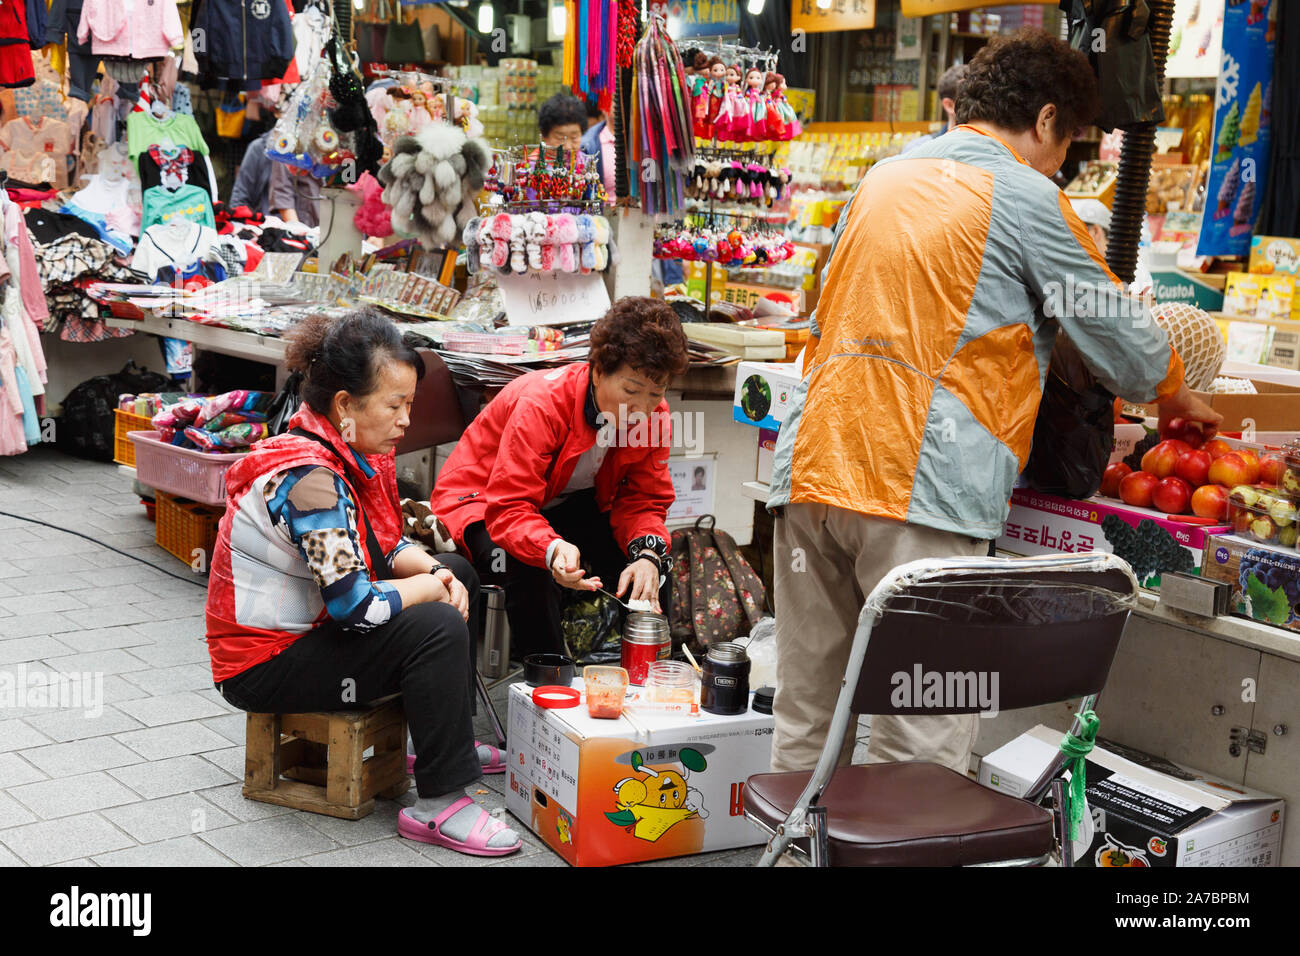 Die drei weiblichen stall Besitzer in kurzen gemeinsamen Mittagessen auf dem Karton als Tabelle durch ihre Geschäfte am Namdaemun Markt, Seoul, Südkorea. Stockfoto